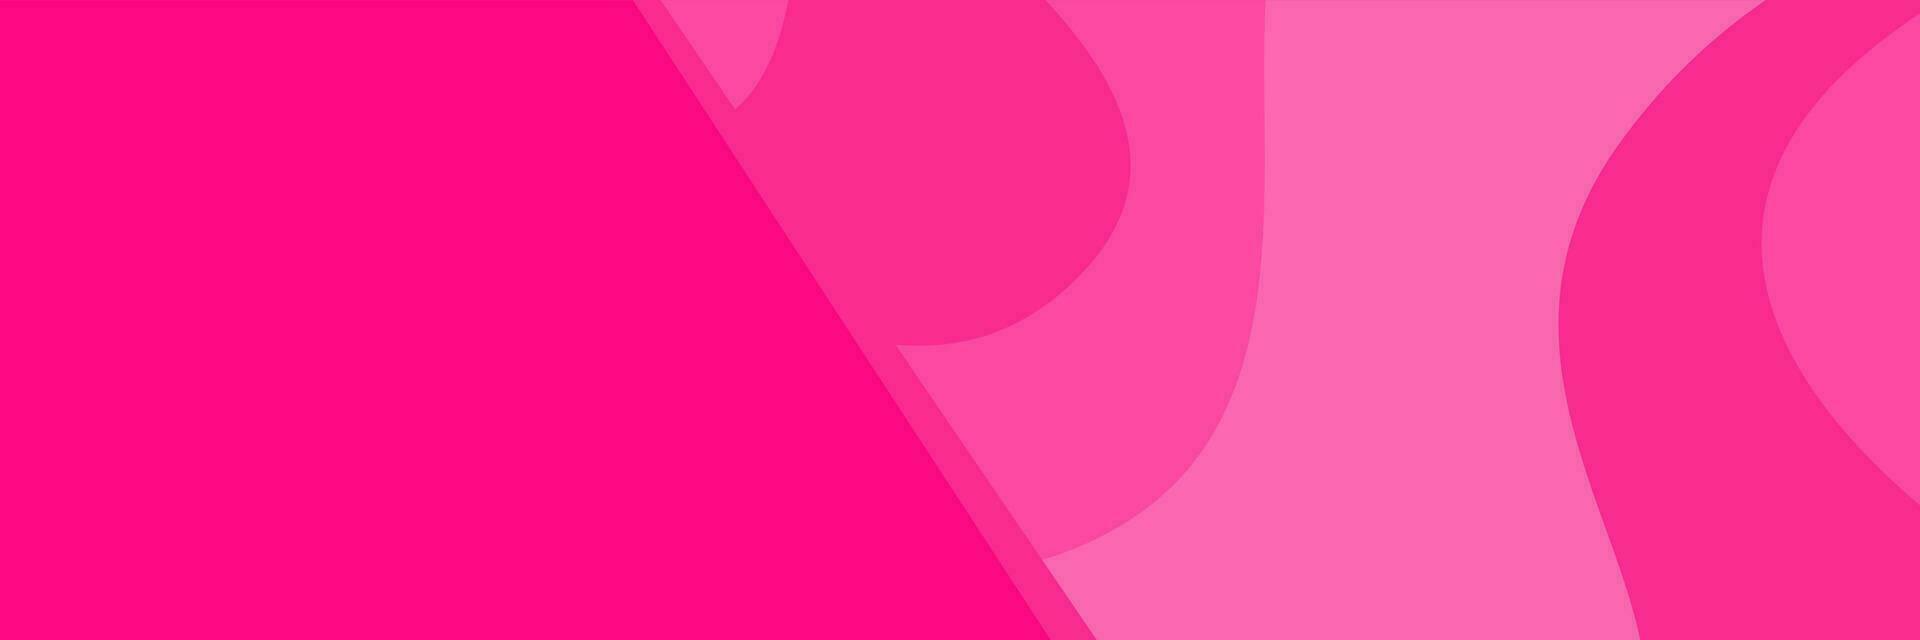 abstrakt Rosa Hintergrund Banner Design vektor